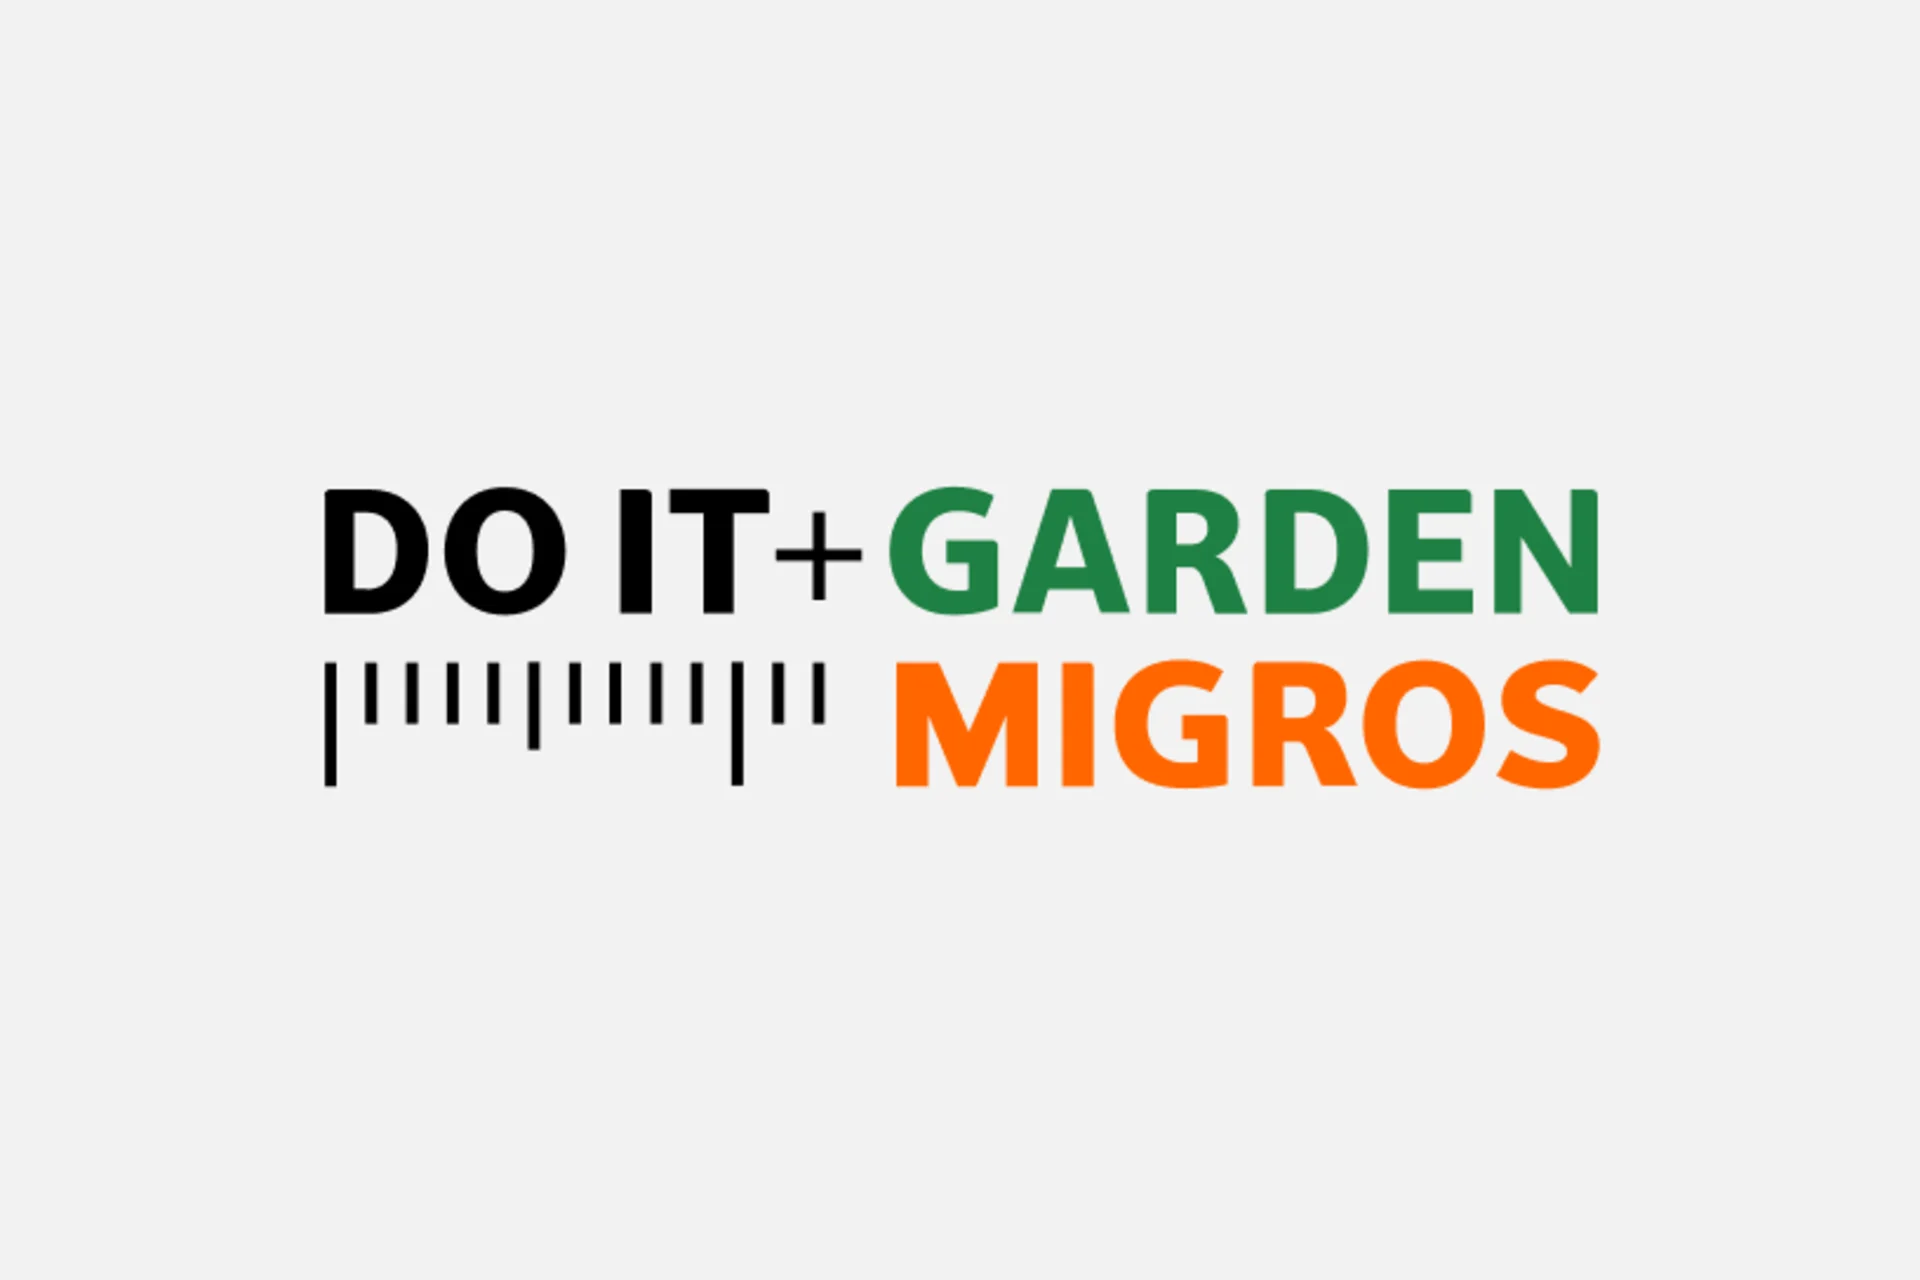 Do it + Garden Migros logo